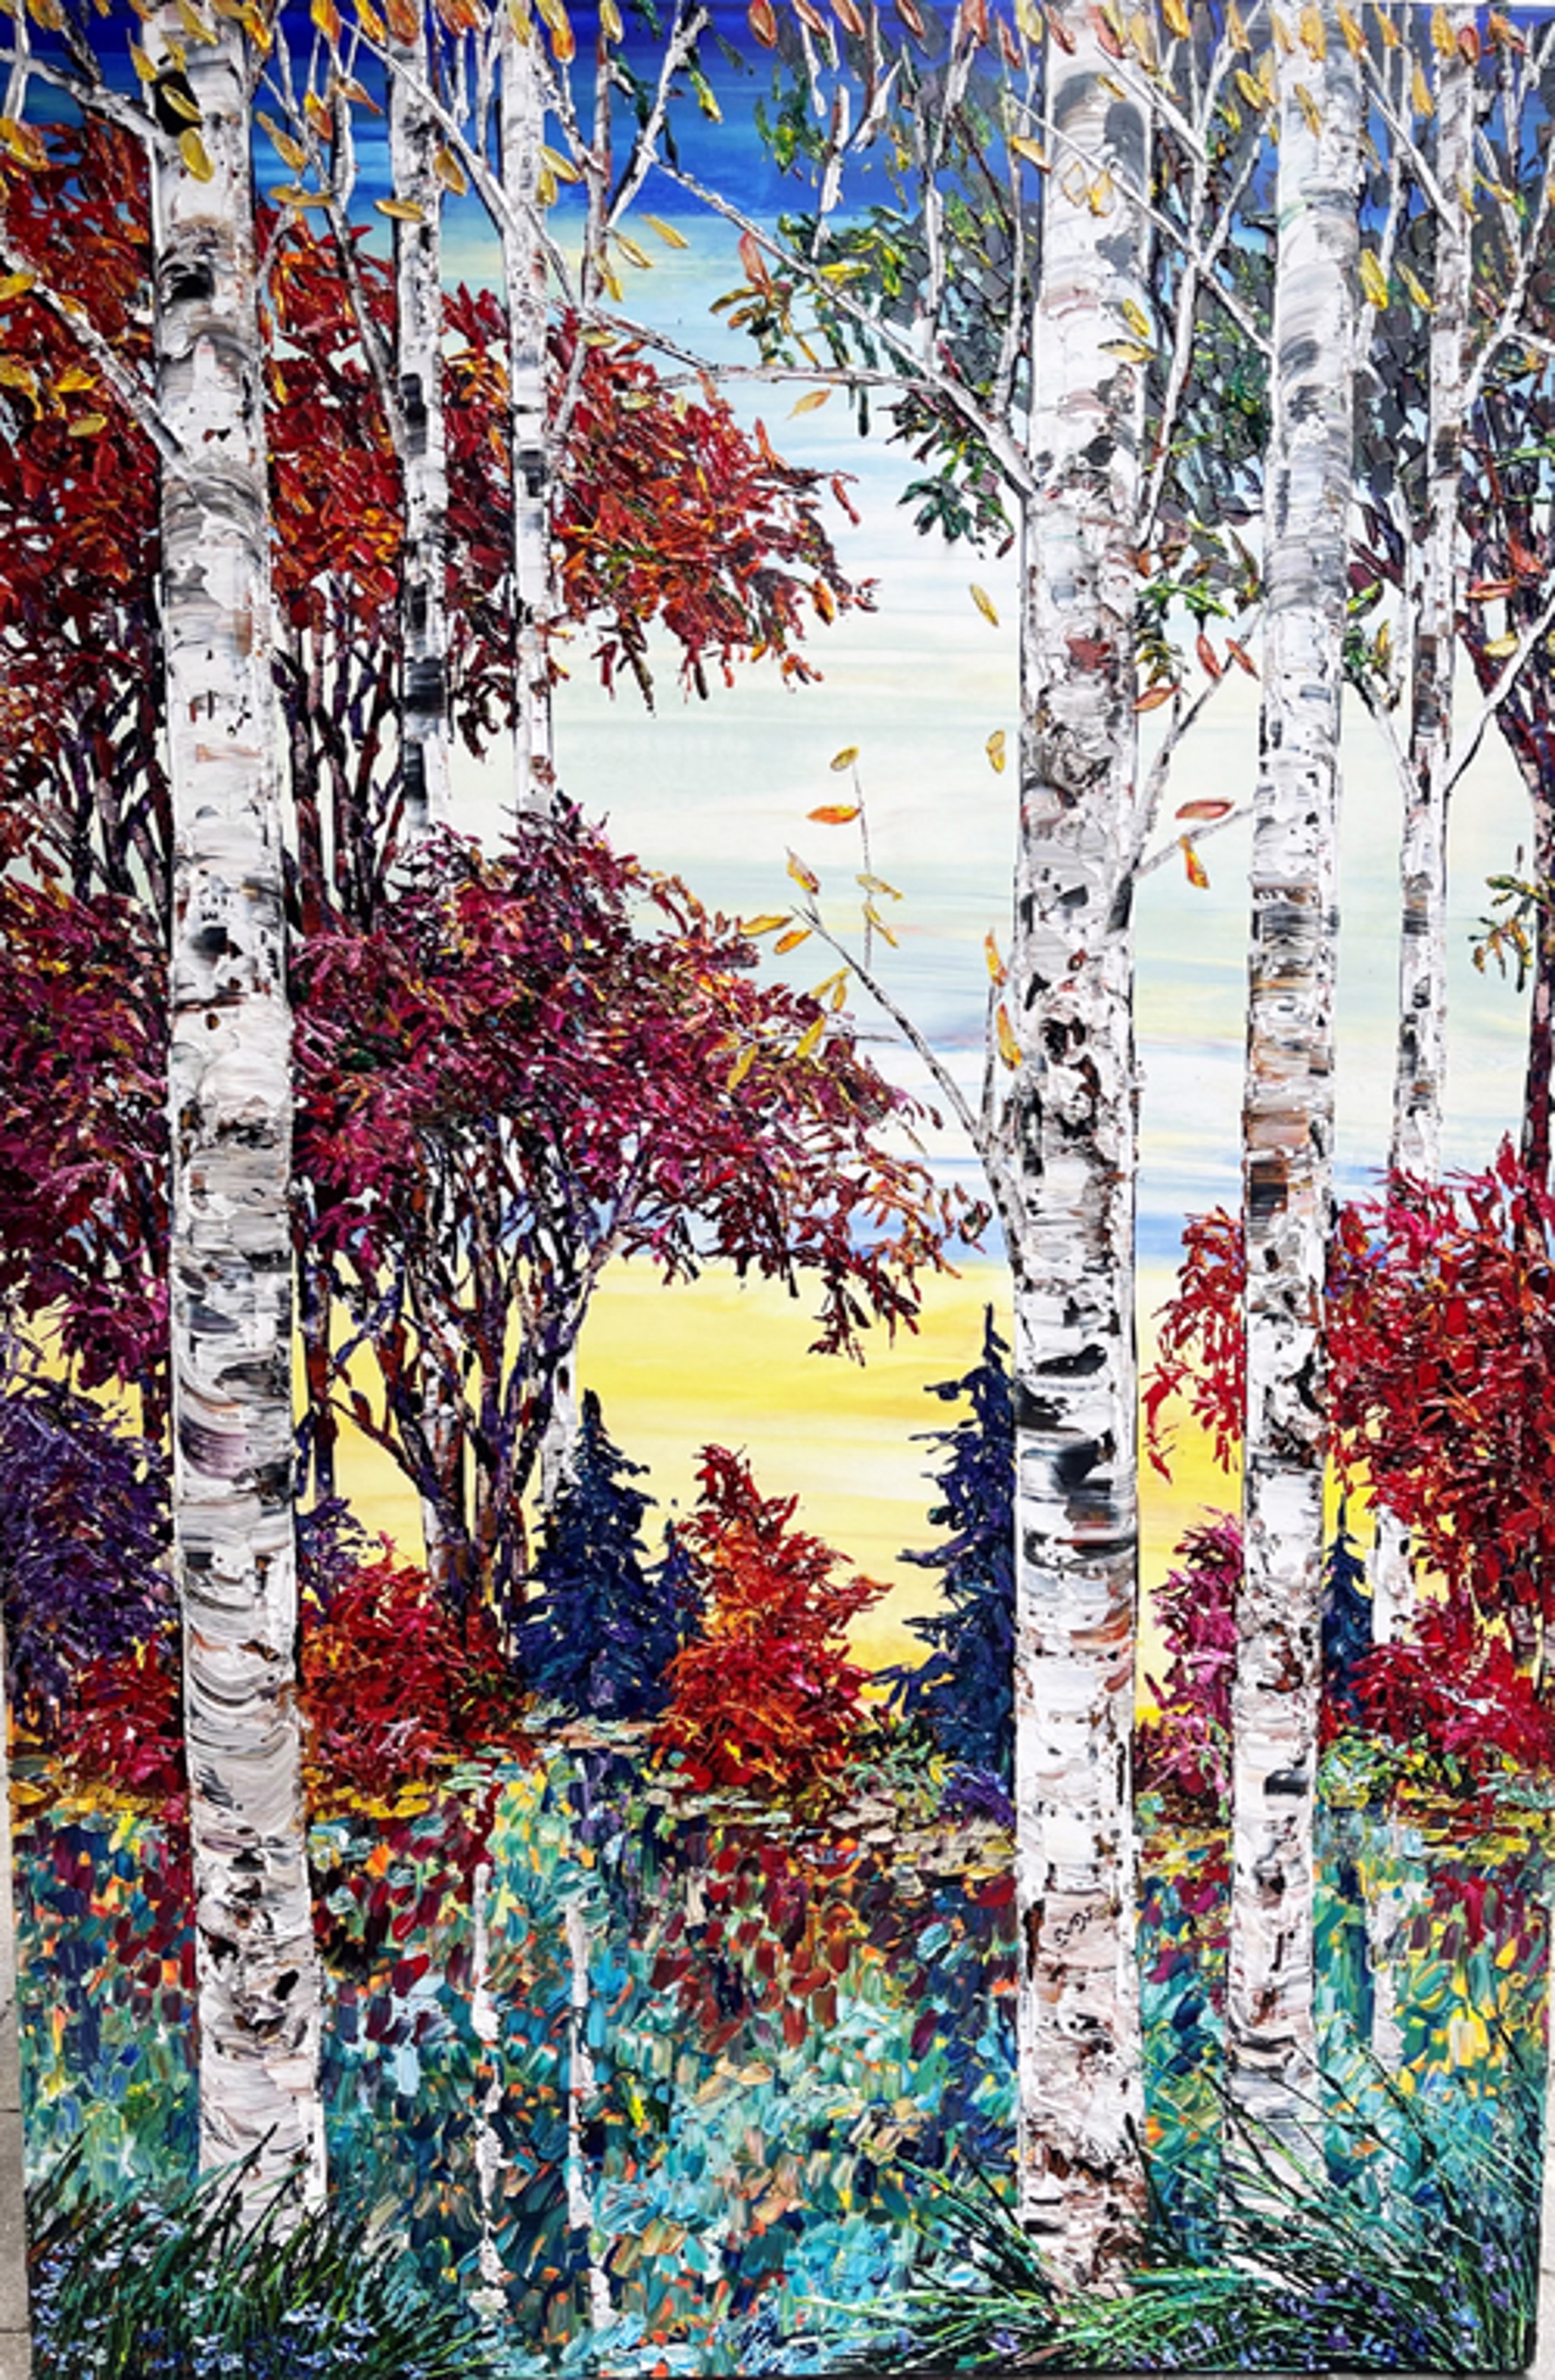 Day Birch w/Pines 190185 by Maya Eventov